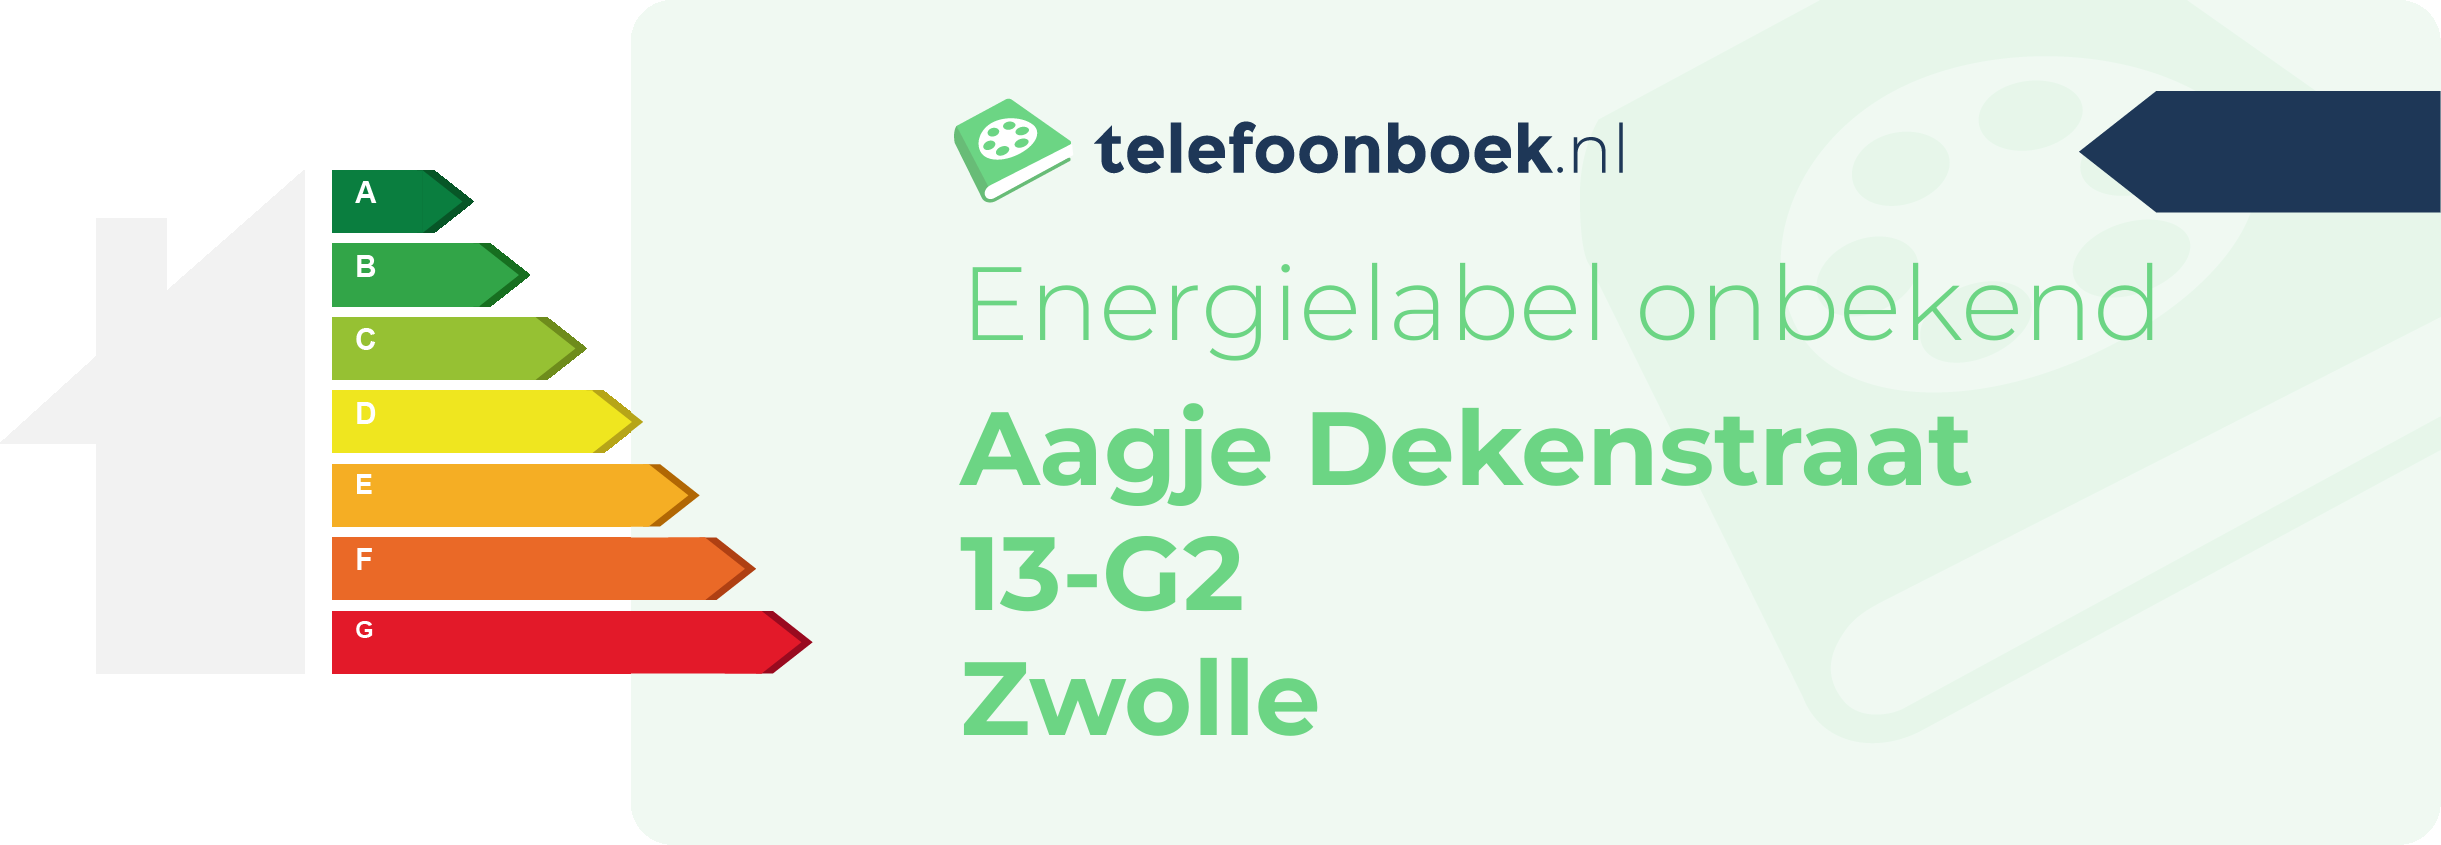 Energielabel Aagje Dekenstraat 13-G2 Zwolle